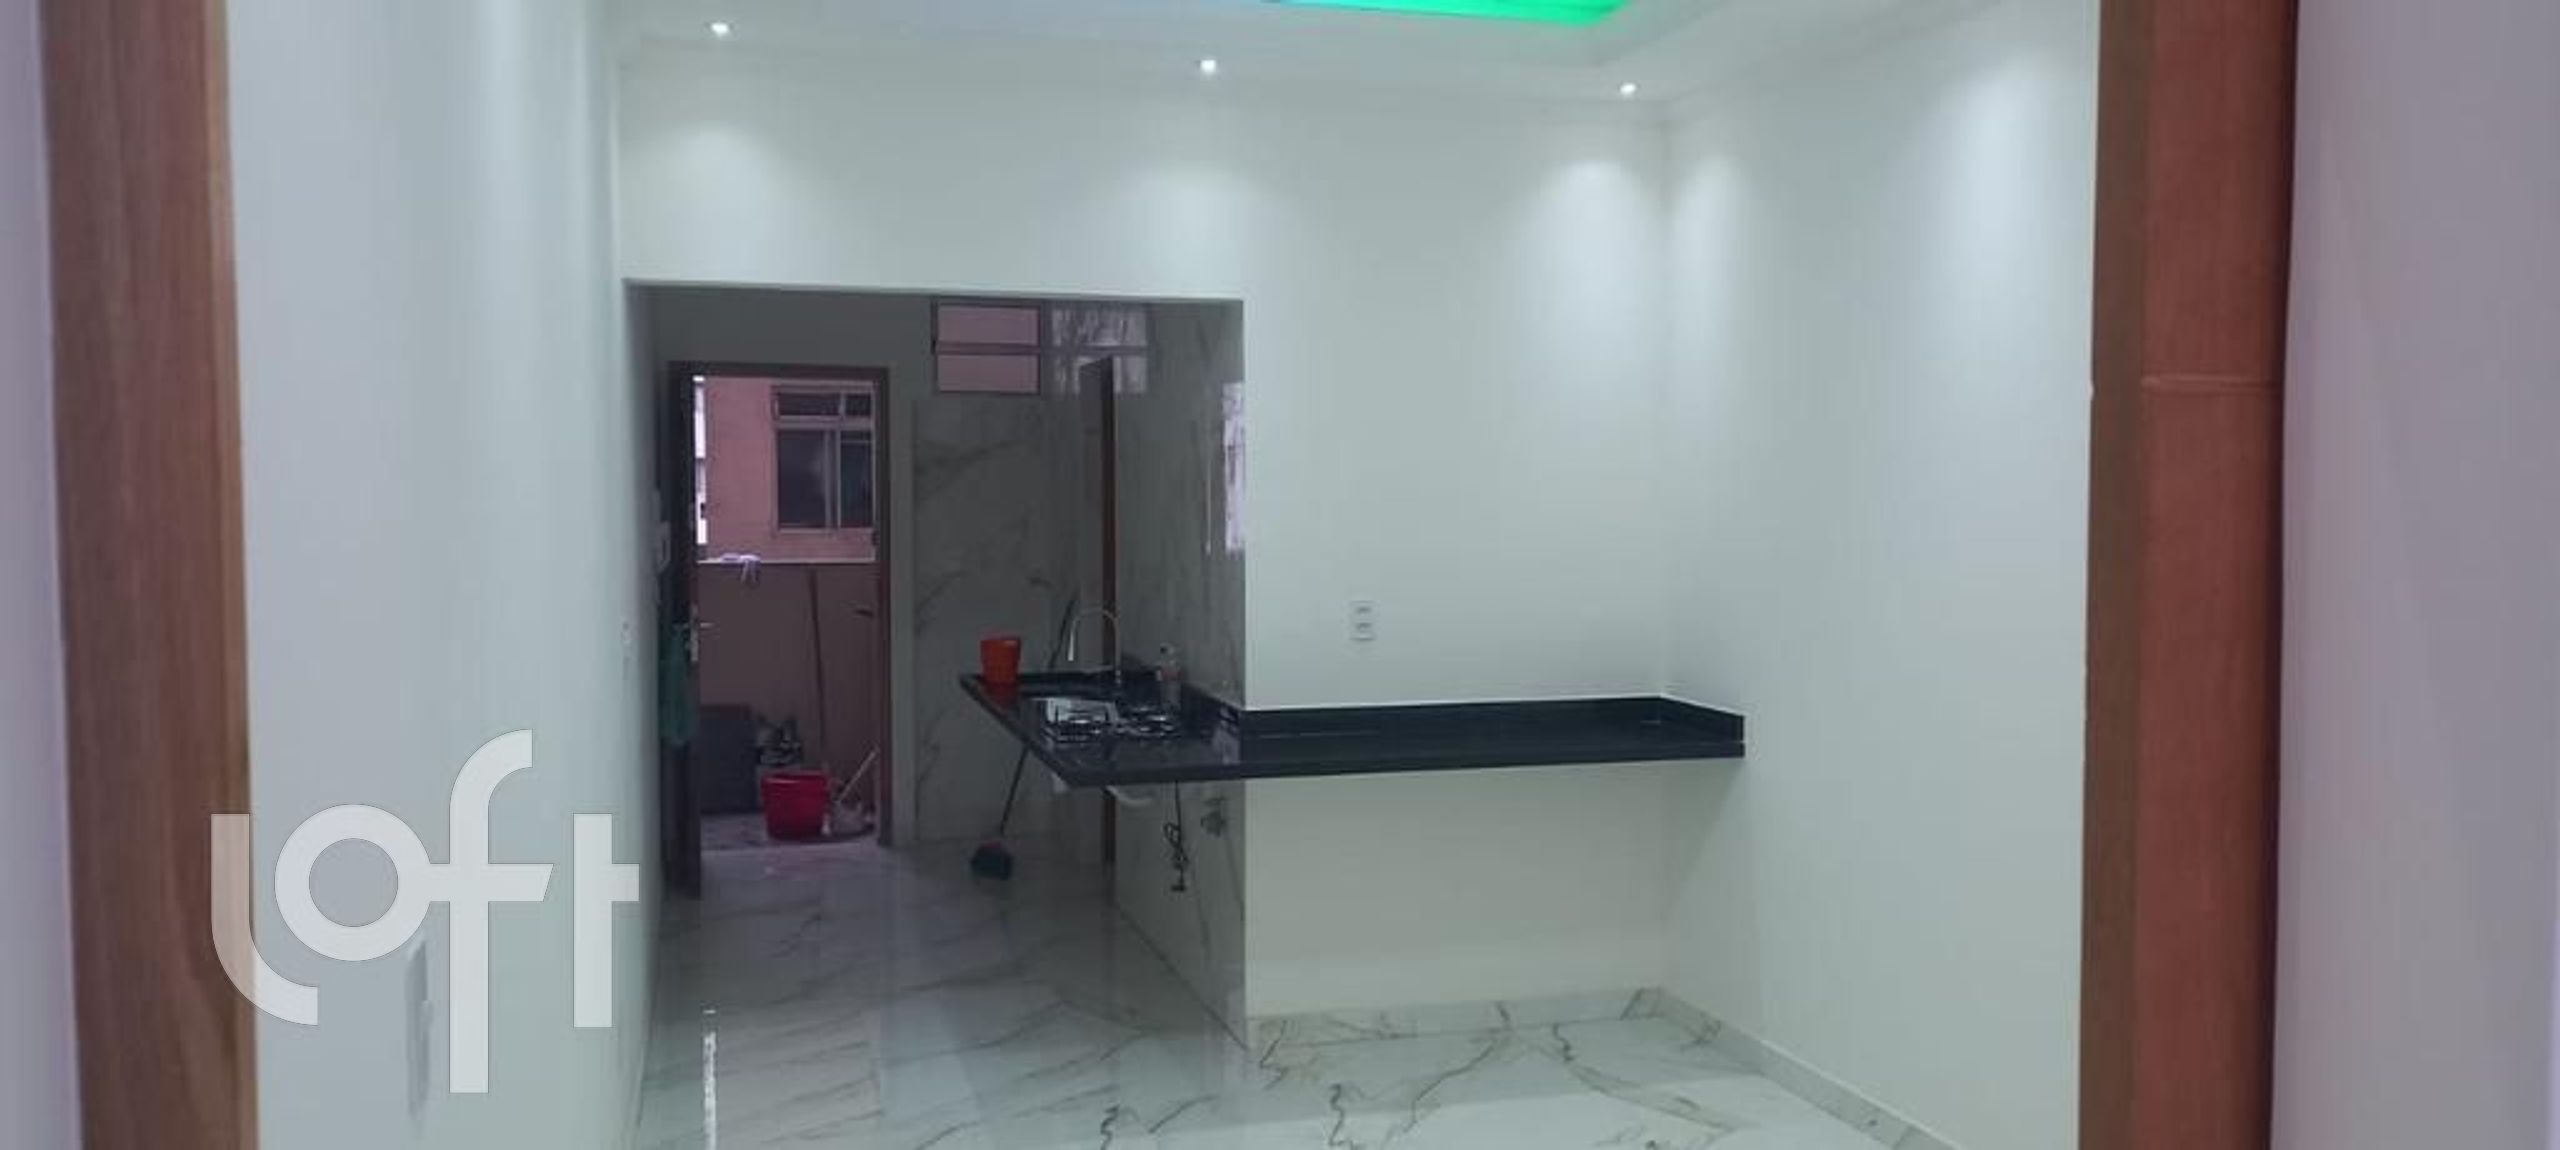 Apartamento em Santa Efigênia, São Paulo/SP de 0m² 1 quartos à venda por R$ 298.000,00